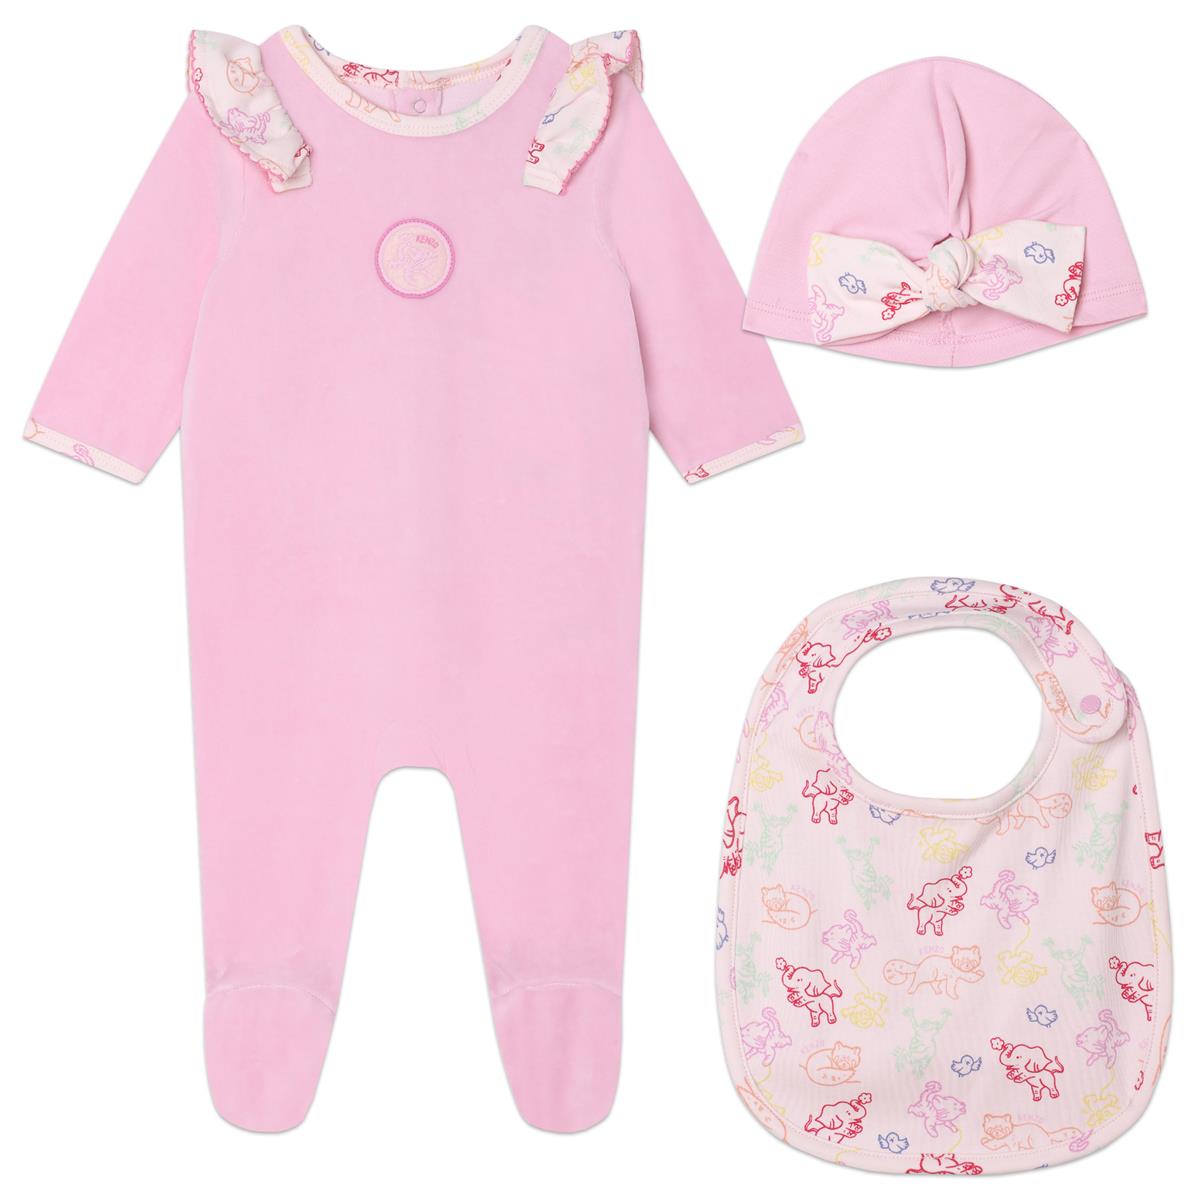 Baby Girls Pink Printed Babysuit Set